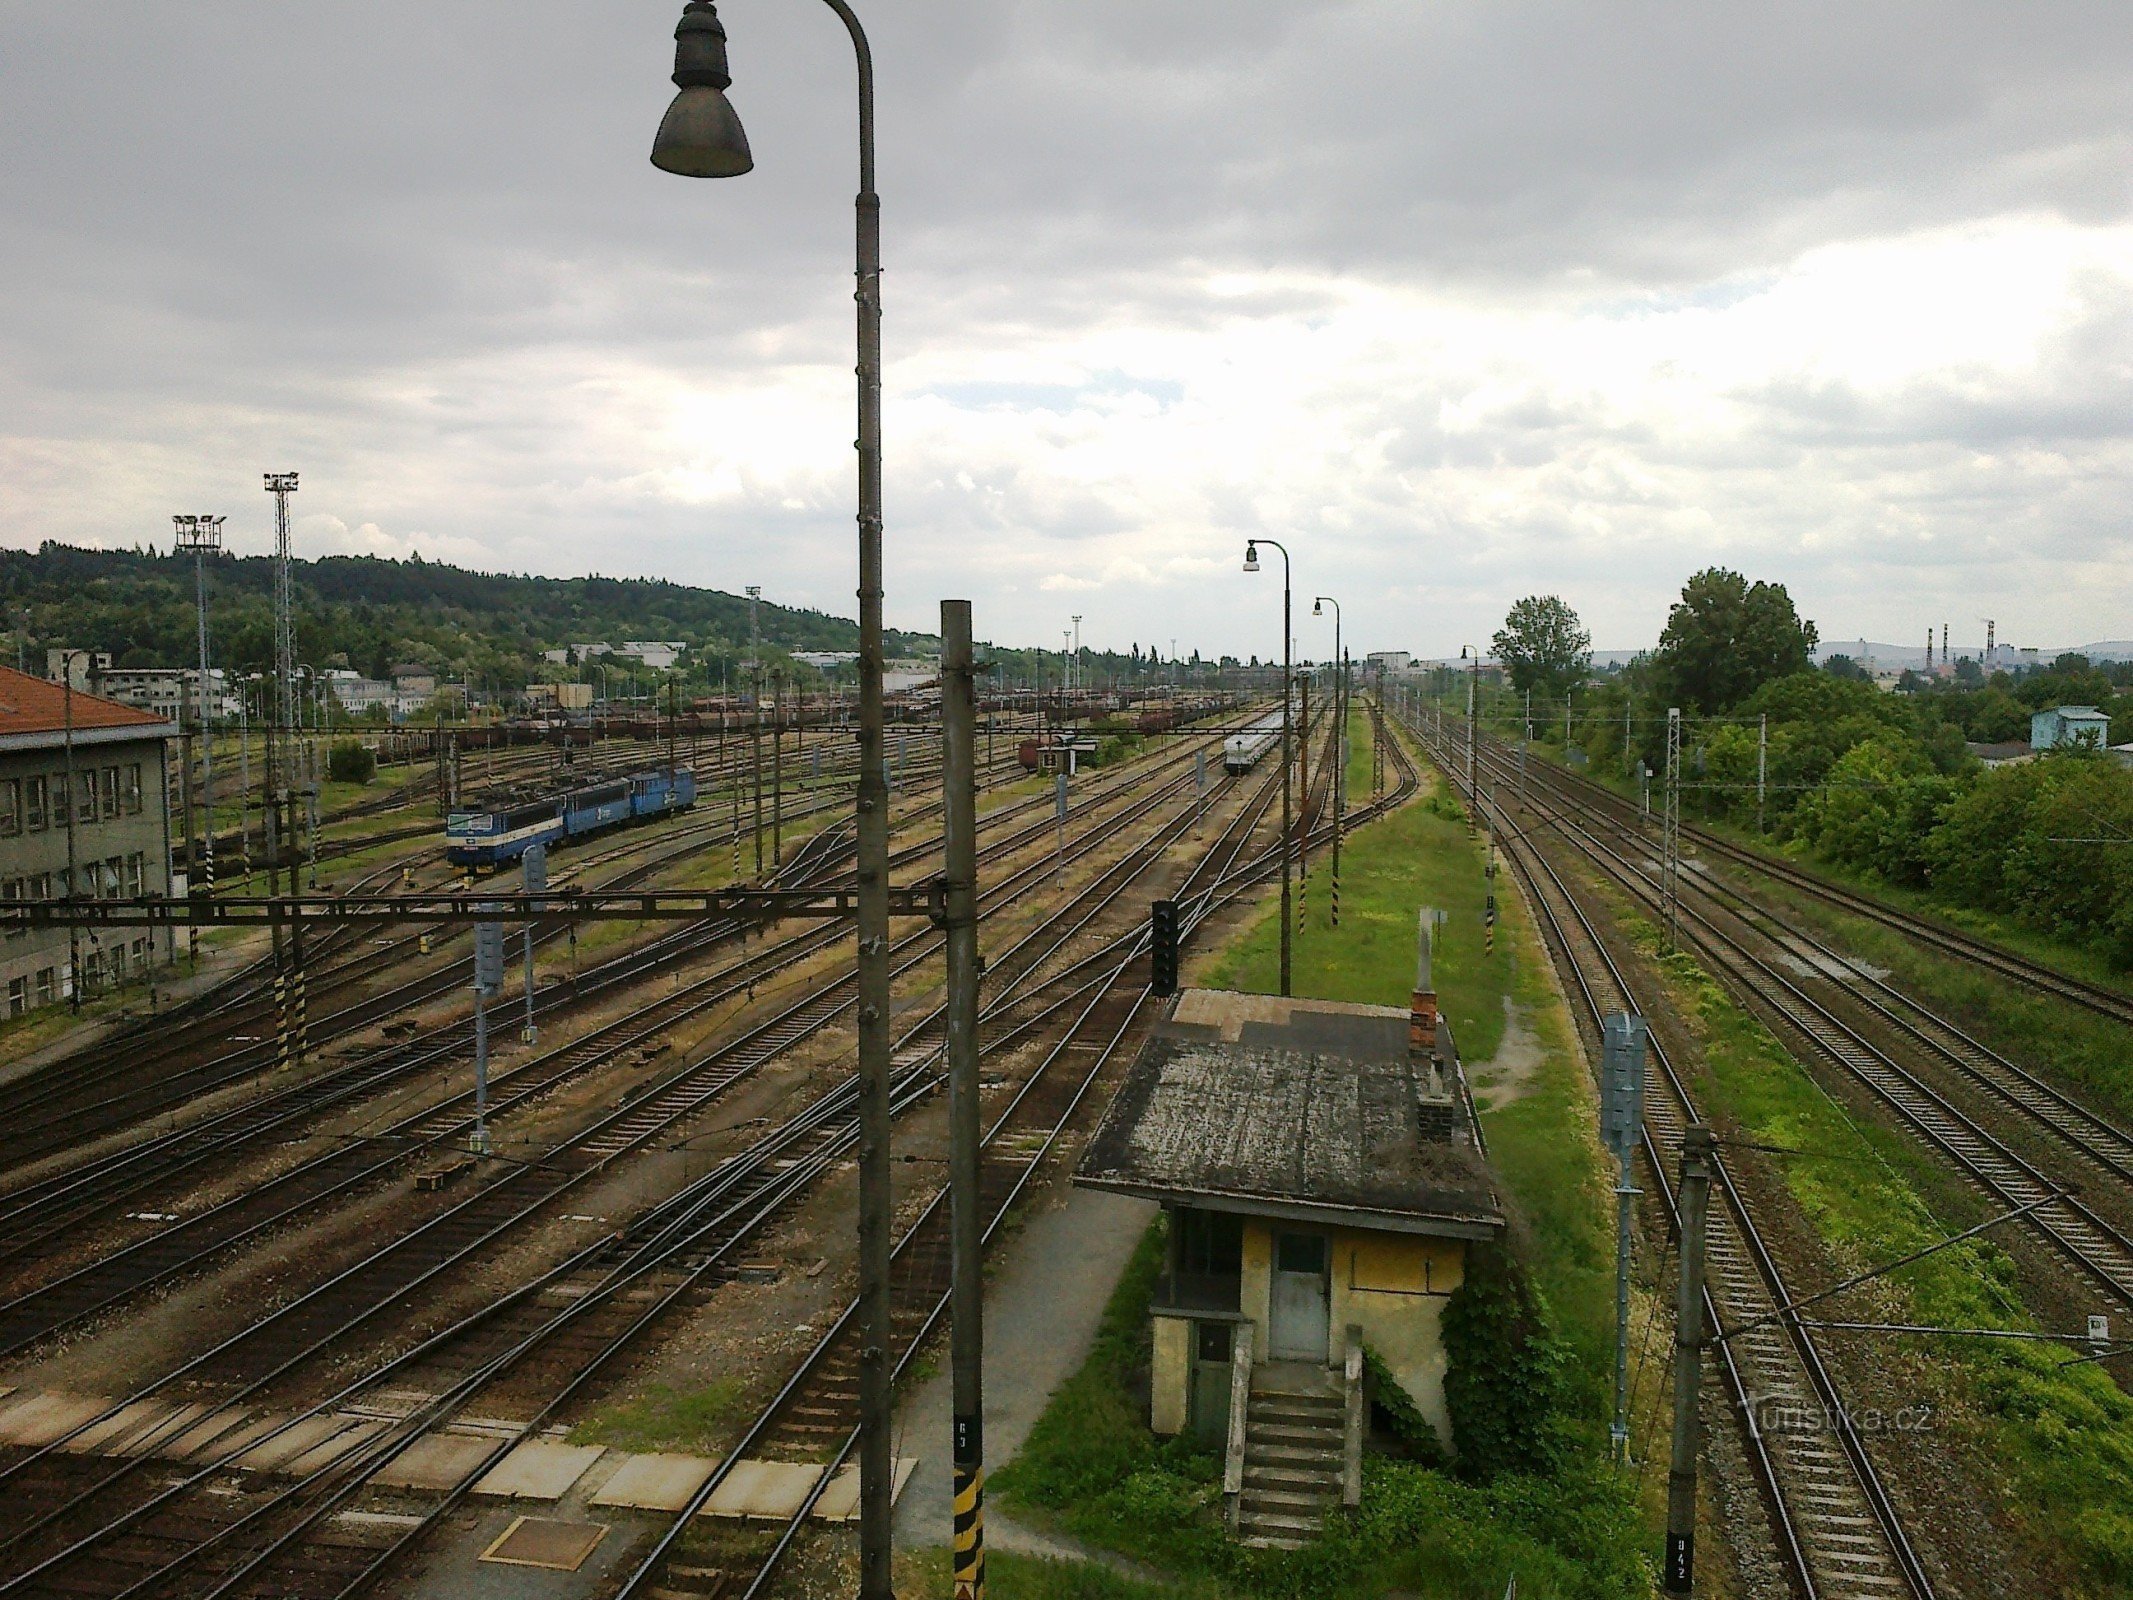 Stacja rozrządowa Brno Maloměřice